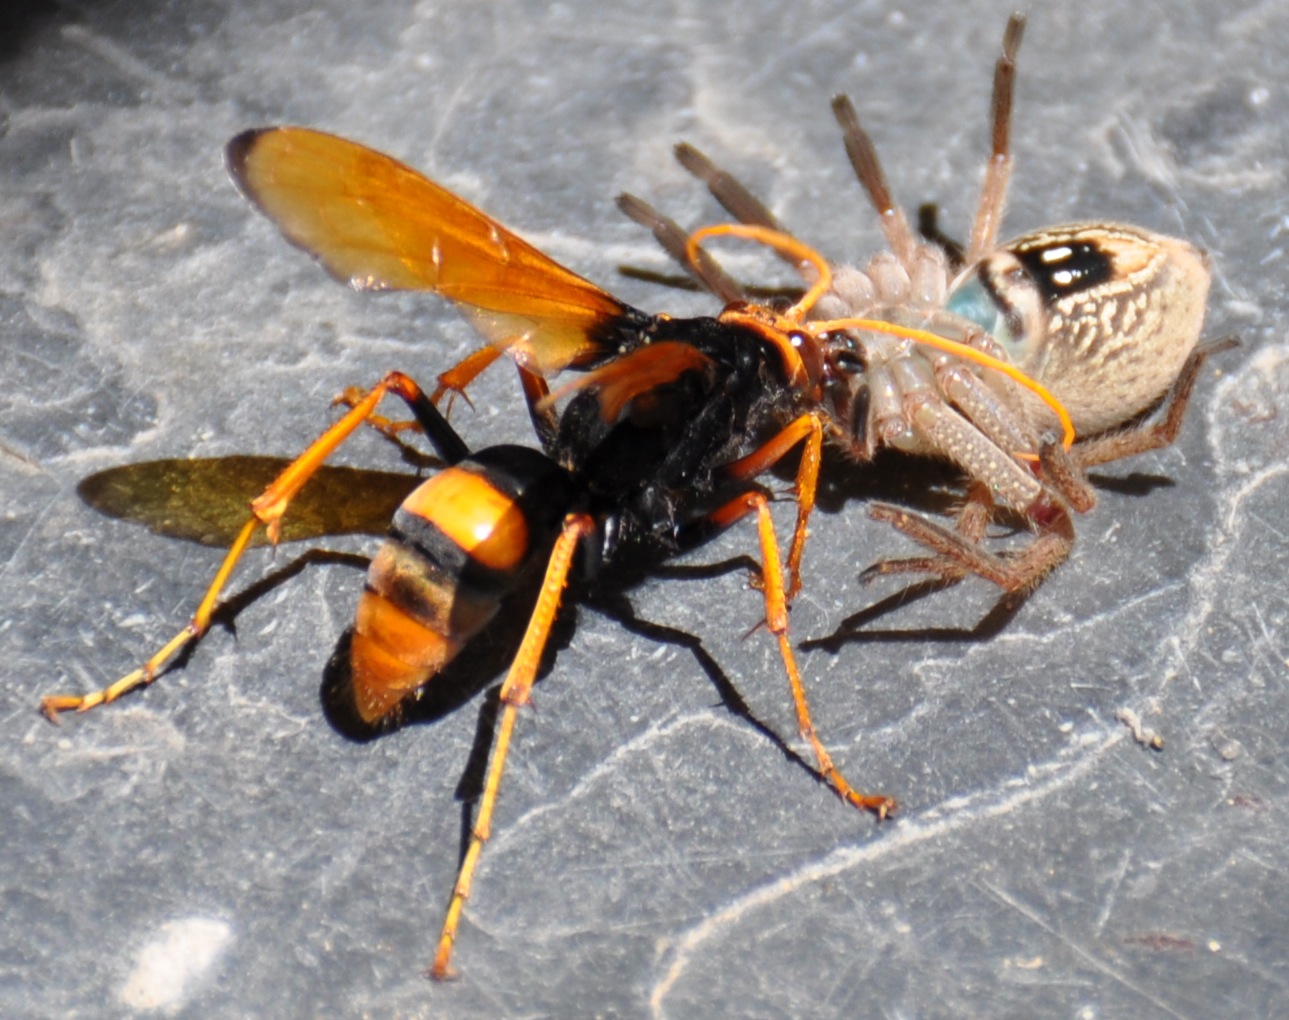  Mud dauber wasp taking spider back to its nest 